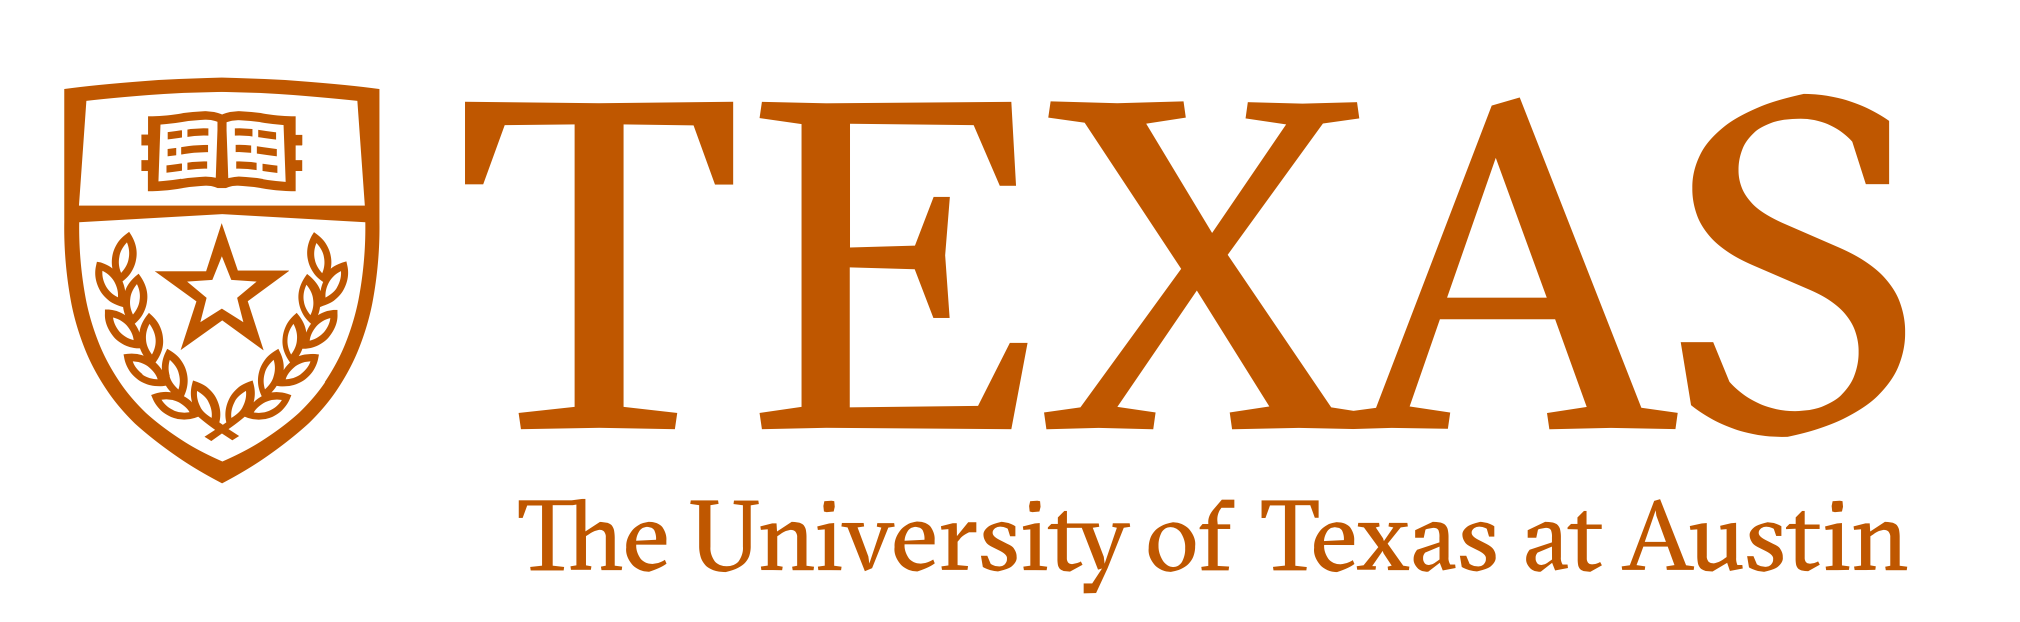 UTexas logo